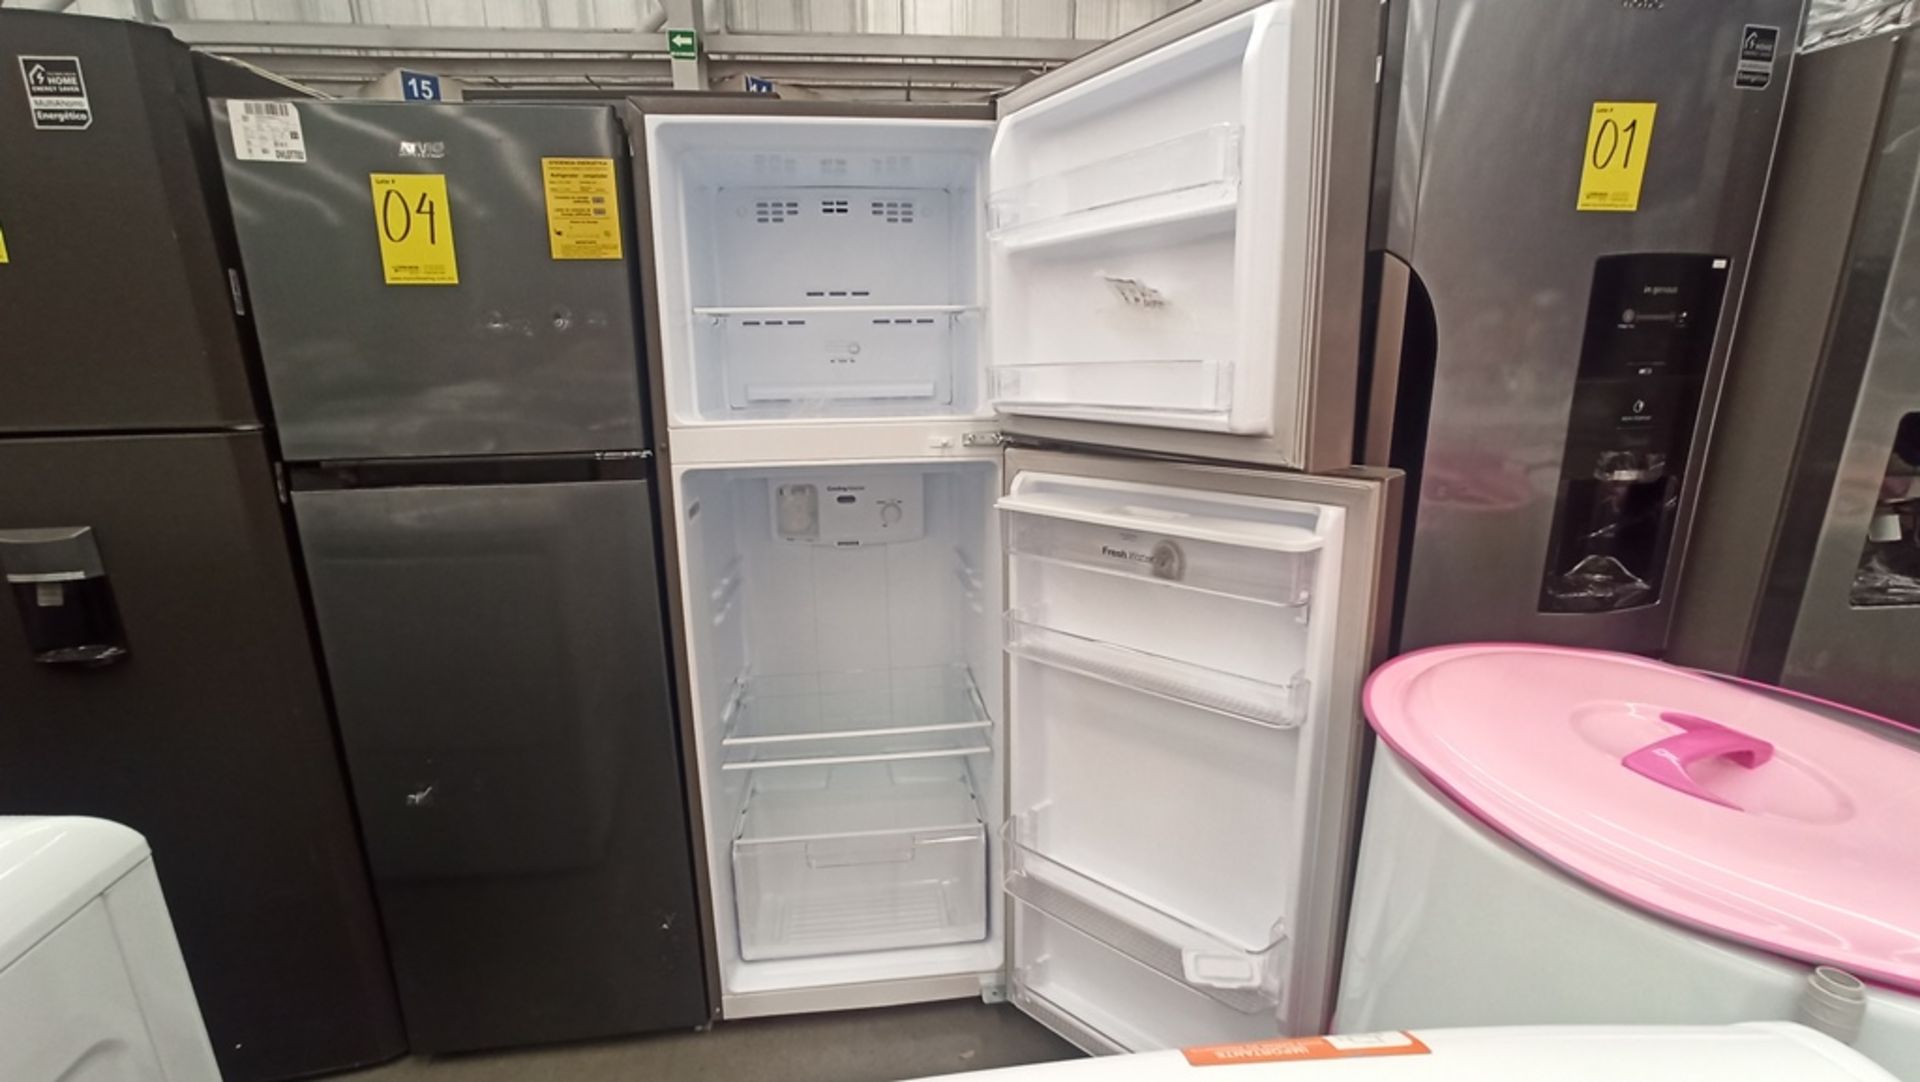 1 Refrigerador Marca WINIA, Modelo BFR32210GMDX, No De Serie MR228N08610320, Color Gris, LB-607 - Image 7 of 9